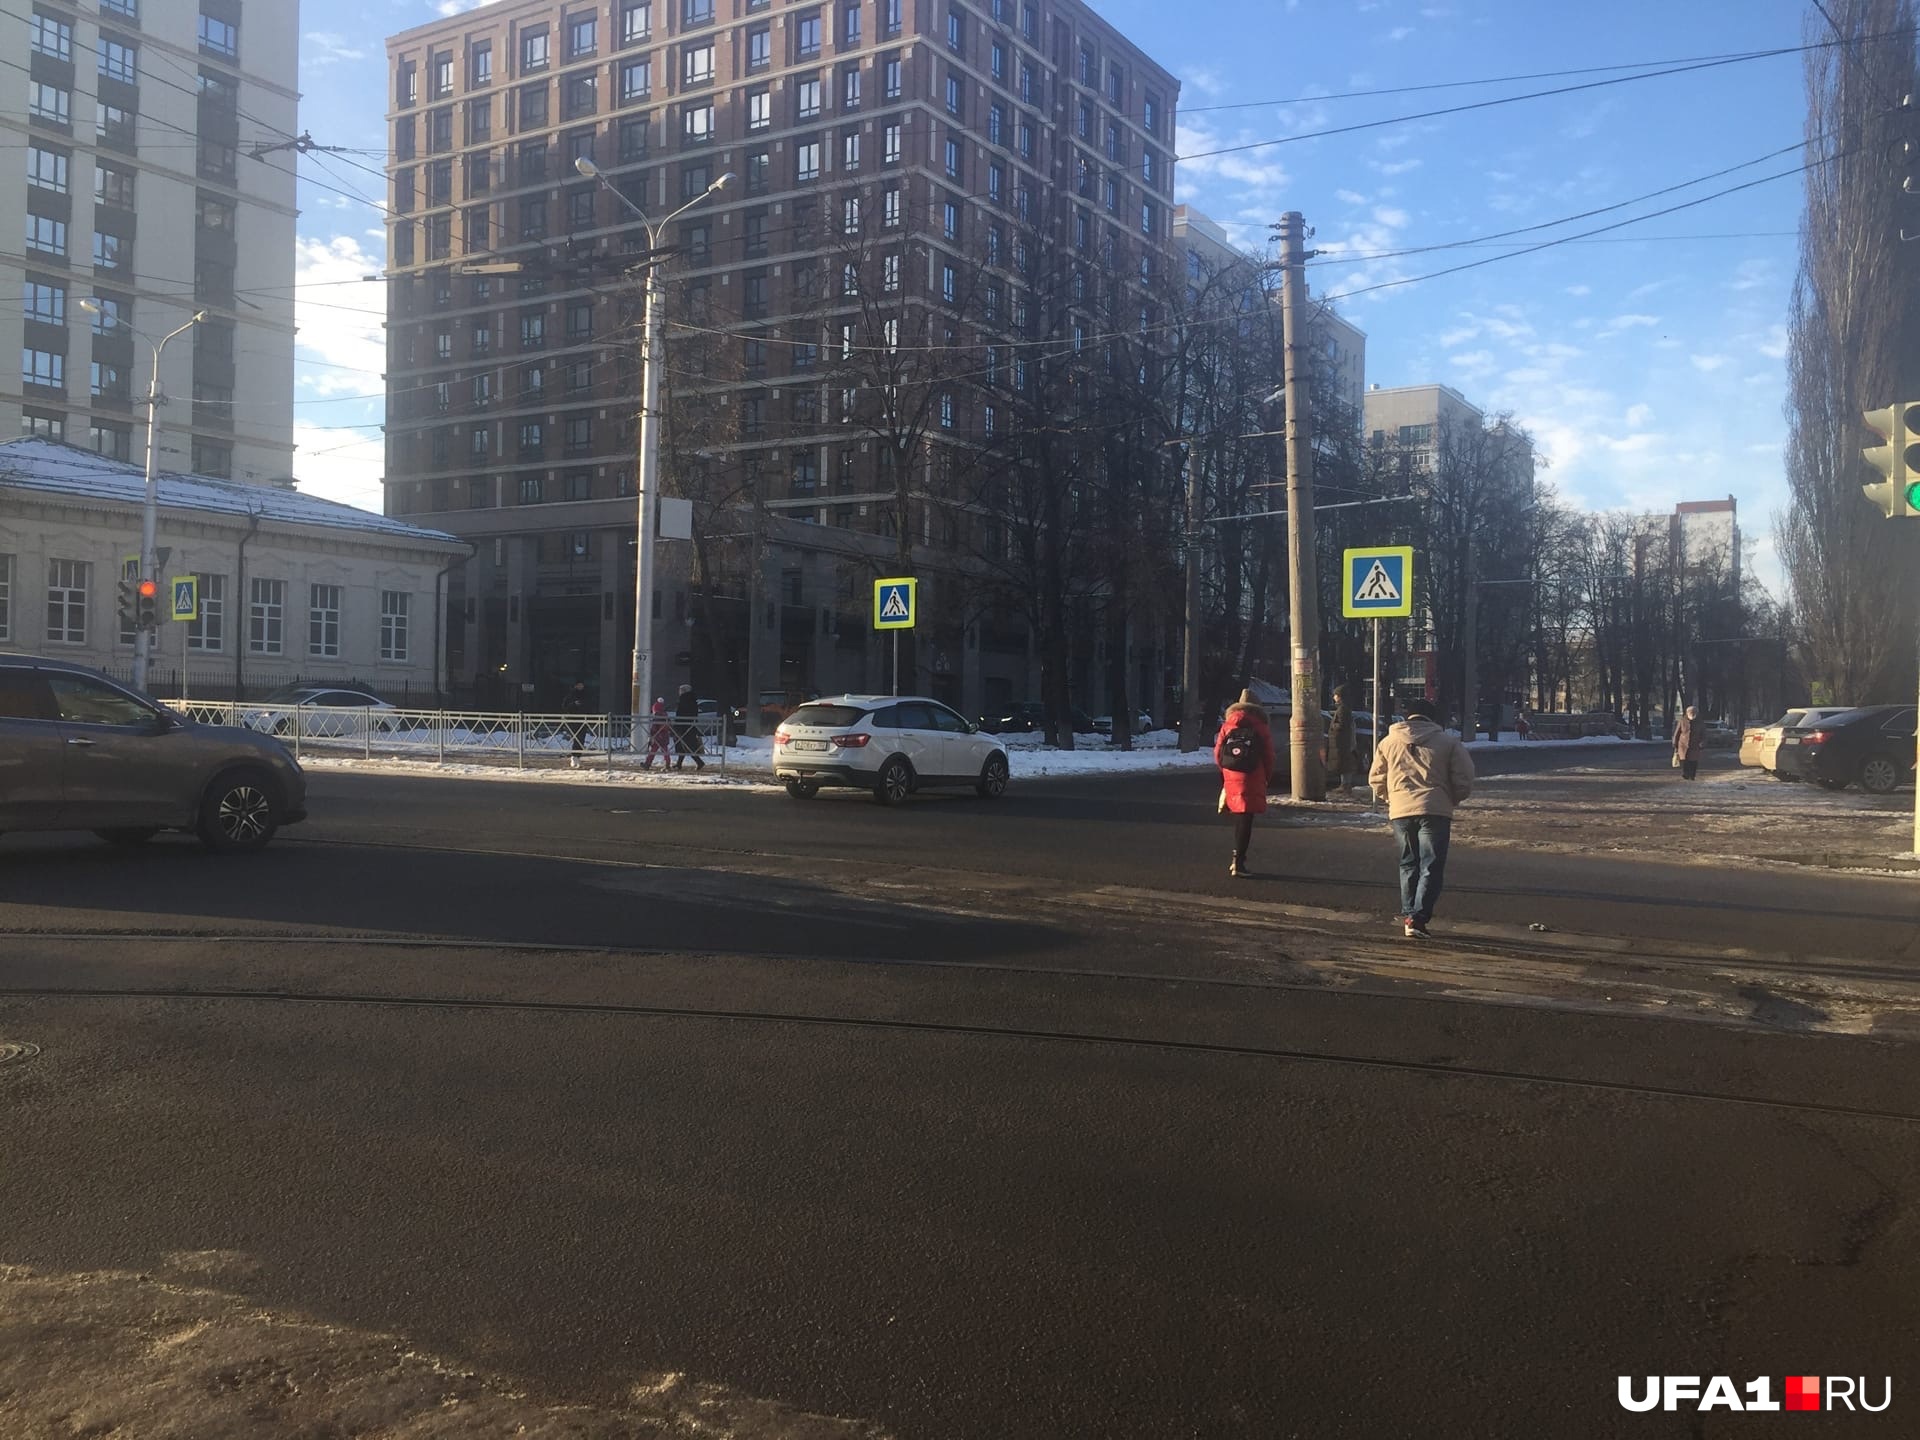 Светофоры на бульваре Ибрагимова буквально заставляют перебегать дороги и аллею